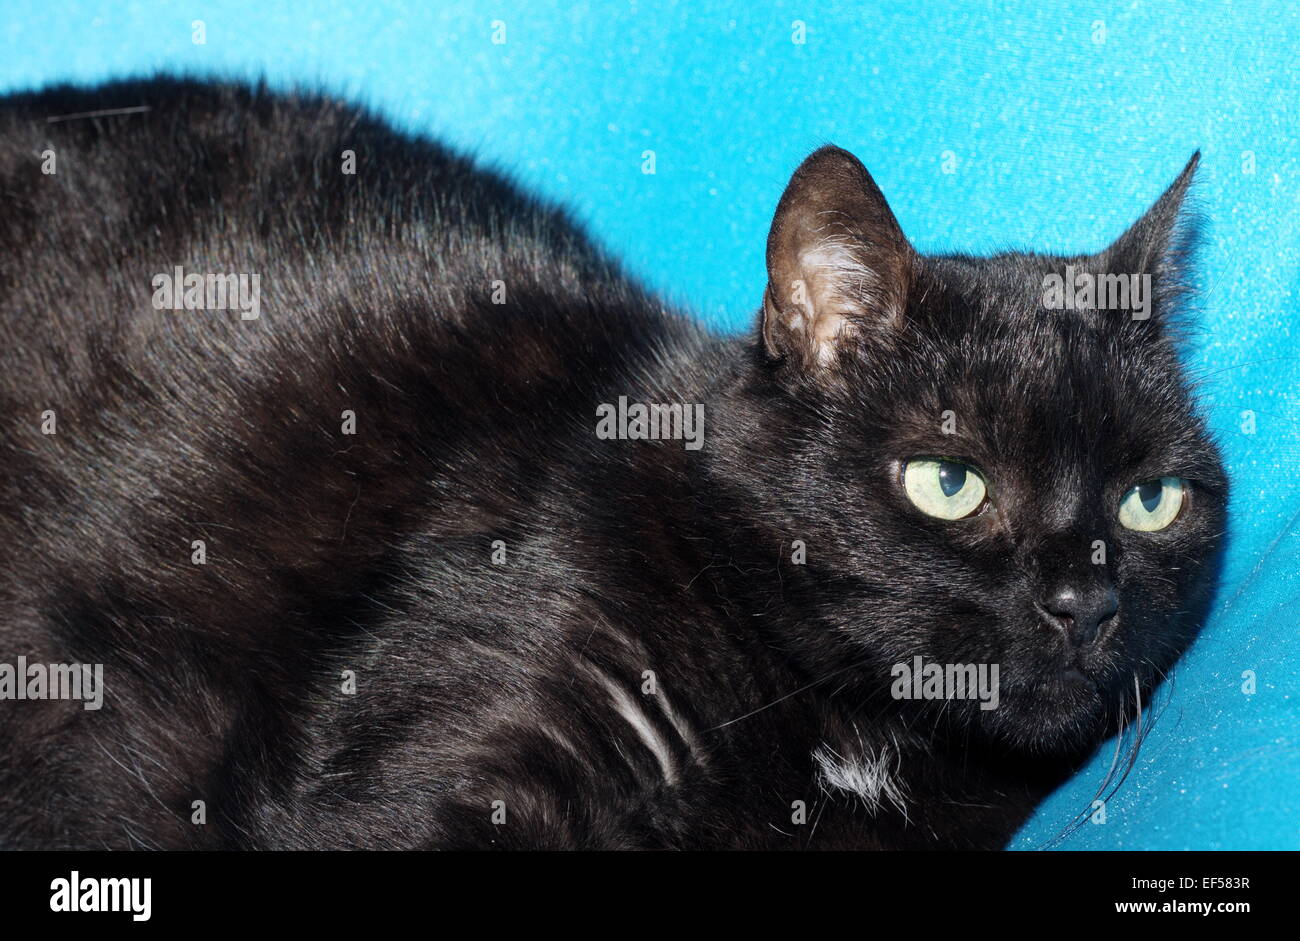 Katze 11 Jahre liegt auf einem blauen Tuch Stock Photo